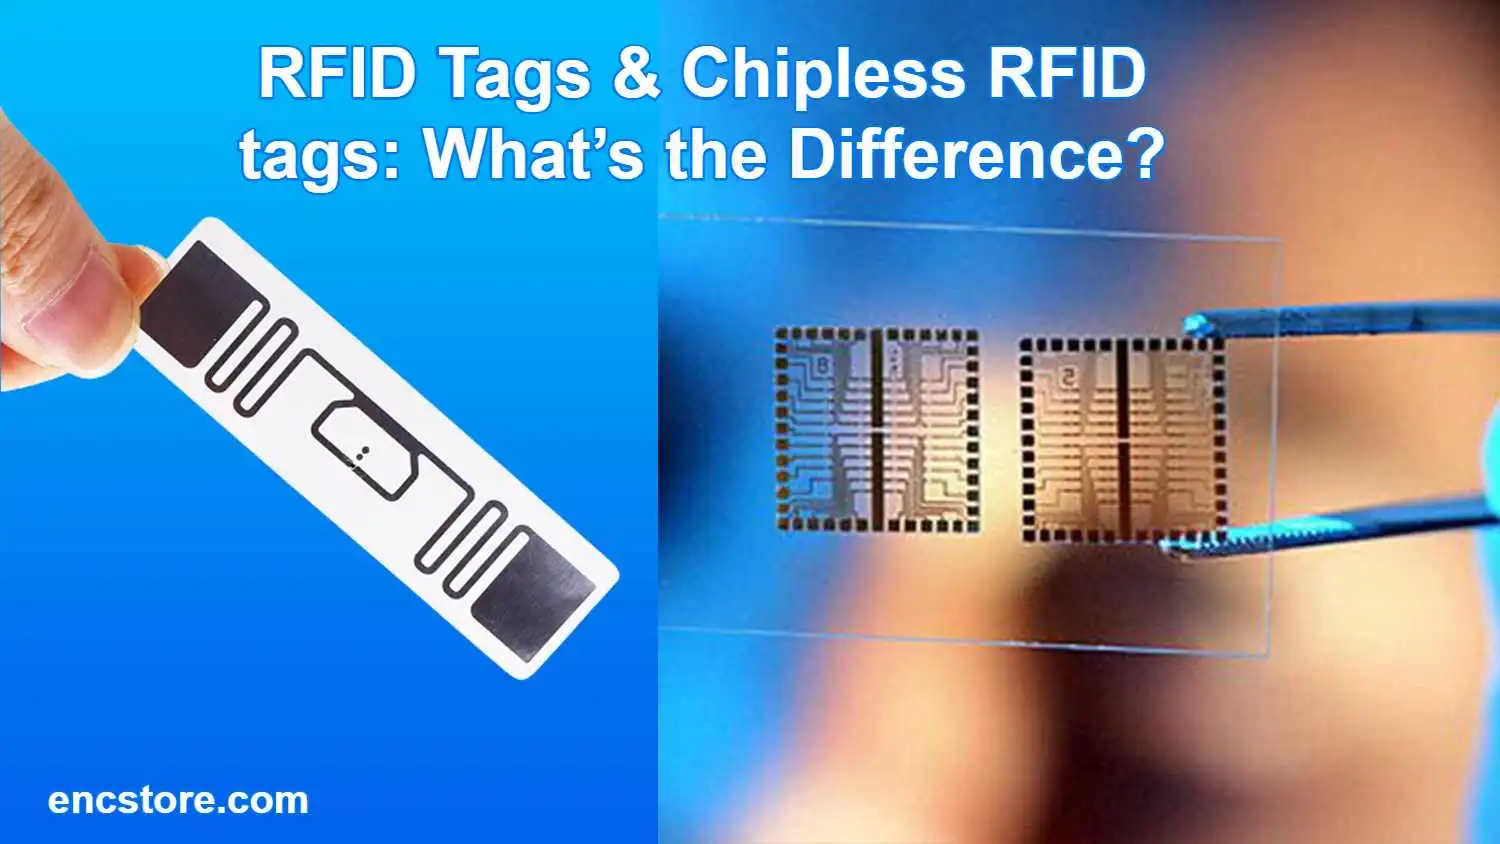 RFID Tags & Chipless RFID tags